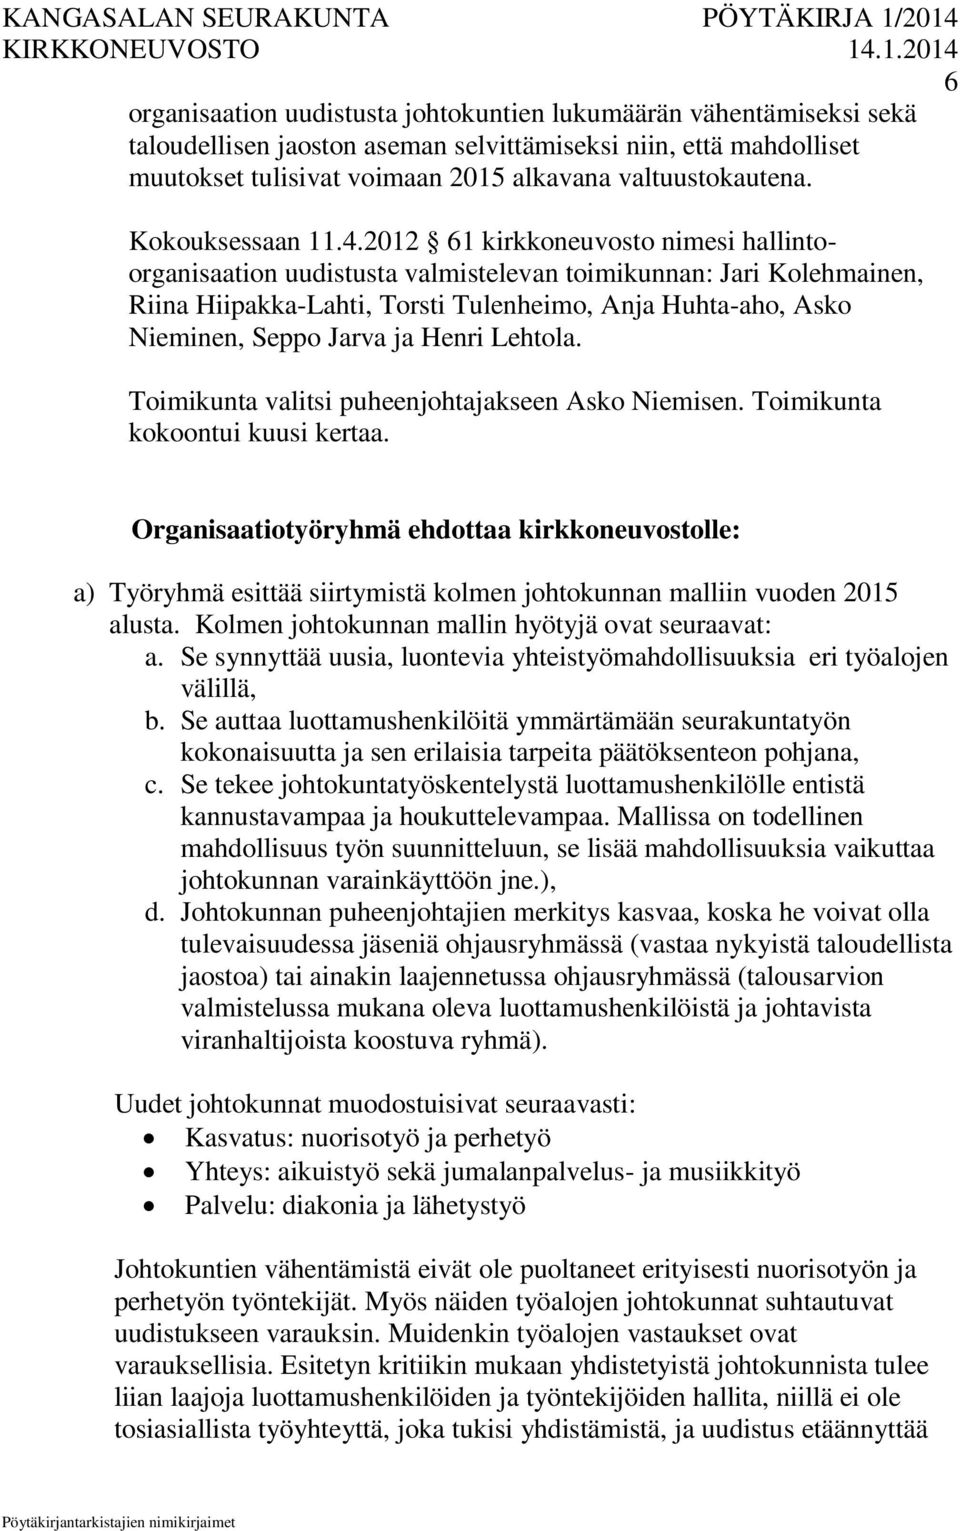 2012 61 kirkkoneuvosto nimesi hallintoorganisaation uudistusta valmistelevan toimikunnan: Jari Kolehmainen, Riina Hiipakka-Lahti, Torsti Tulenheimo, Anja Huhta-aho, Asko Nieminen, Seppo Jarva ja